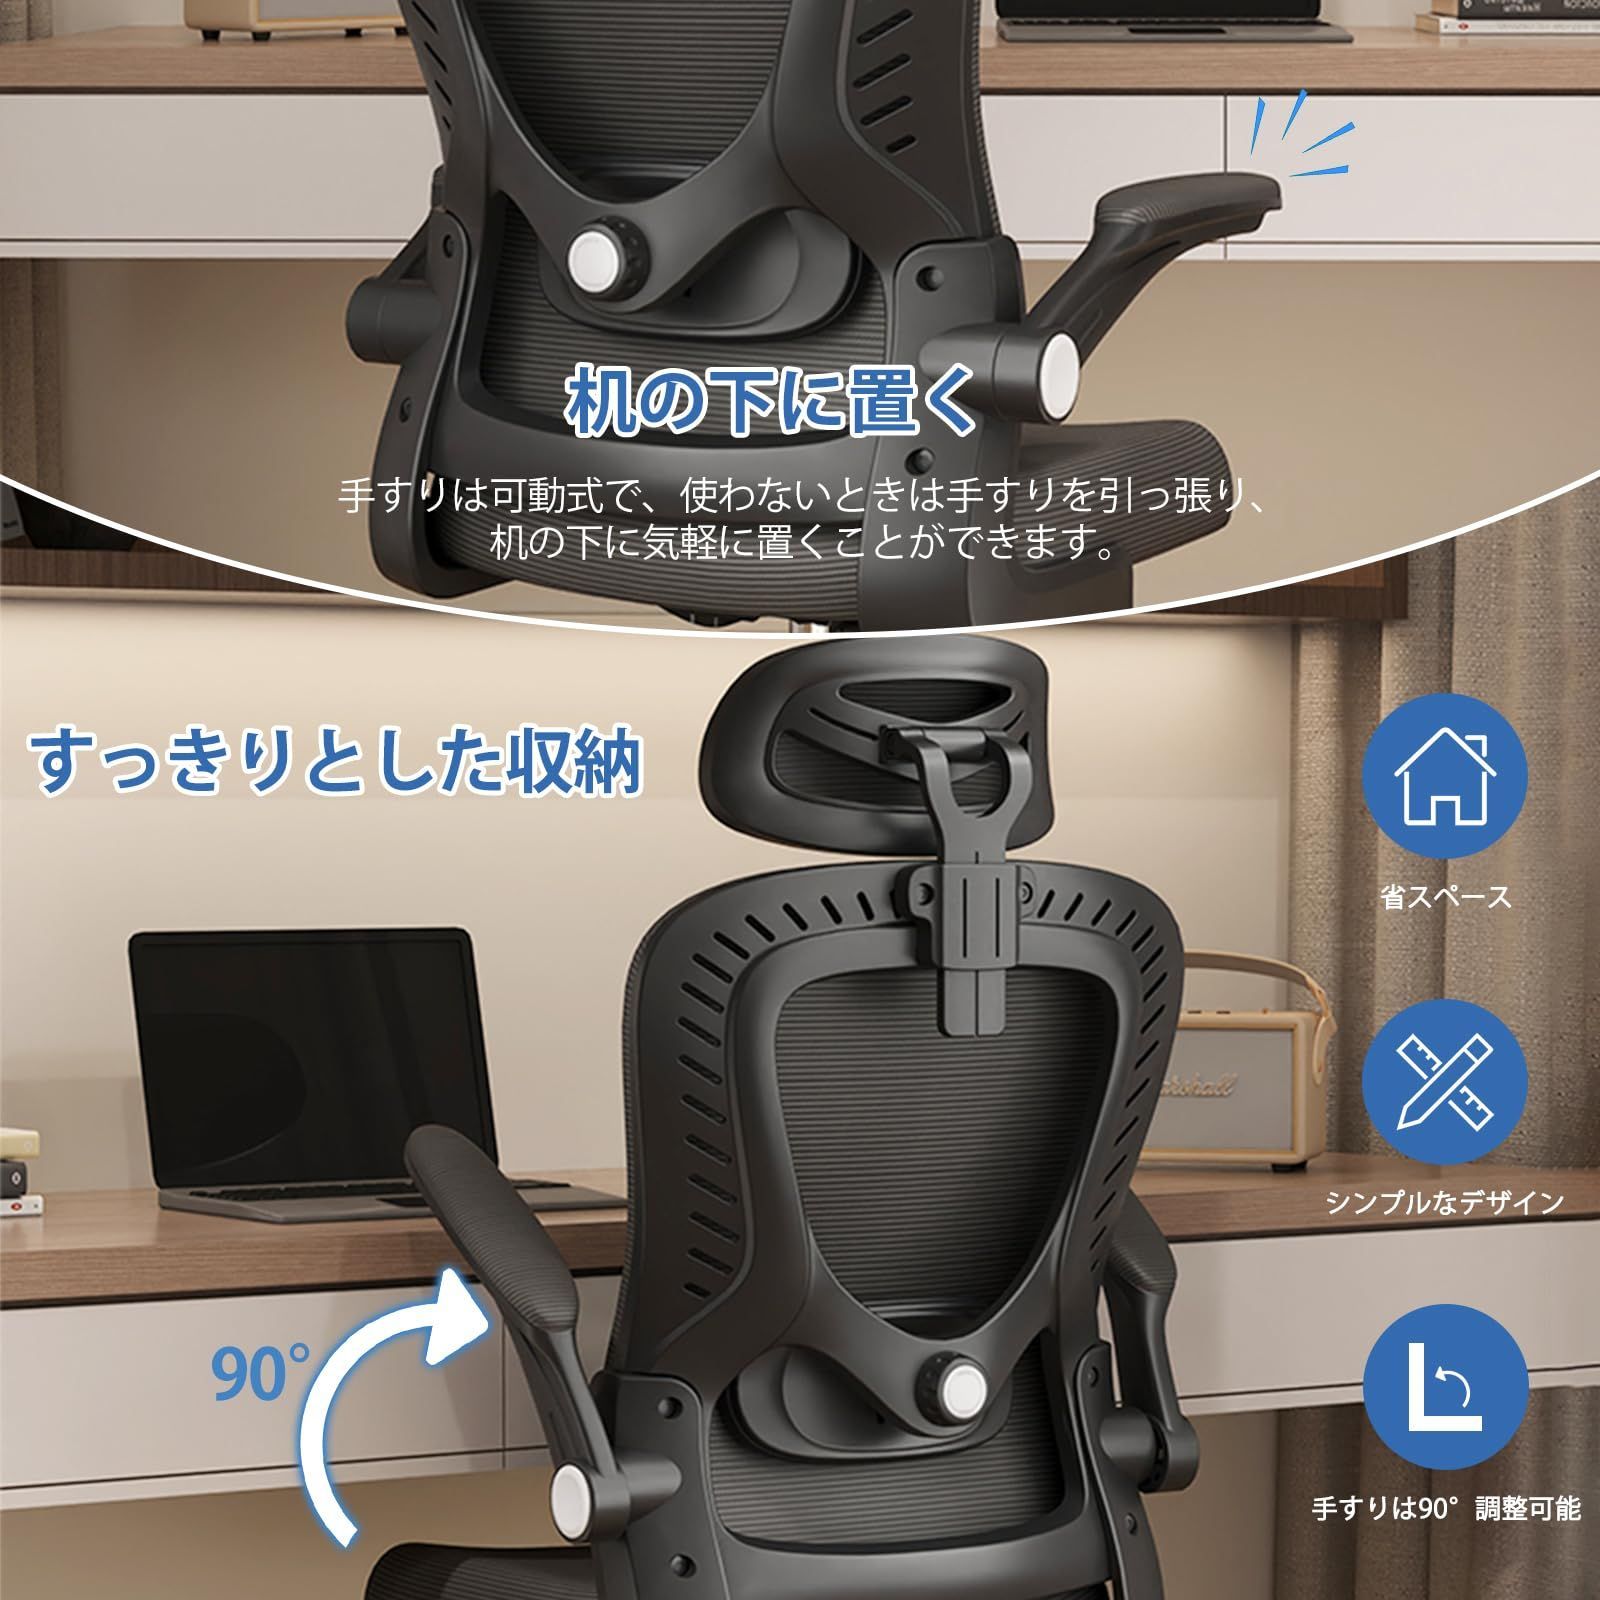 オフィスチェア 椅子 パソコンチェア 人間工学 S字構造 揺れ式